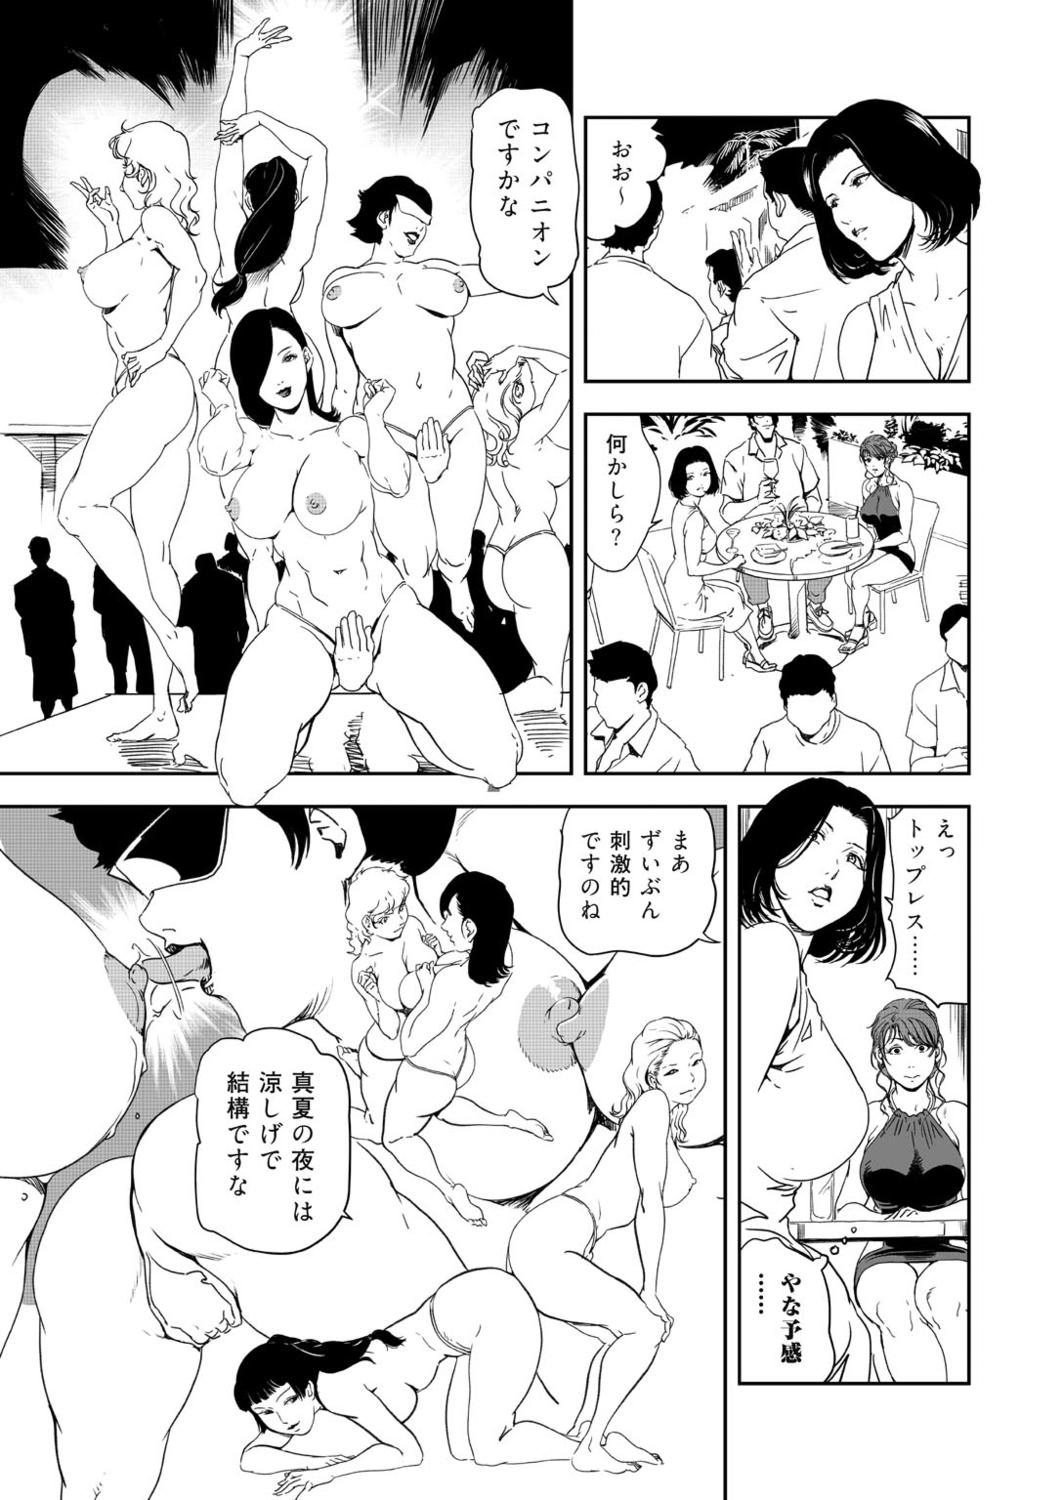 Nasty Free Porn Nikuhisyo Yukiko 41 Sfm - Page 11